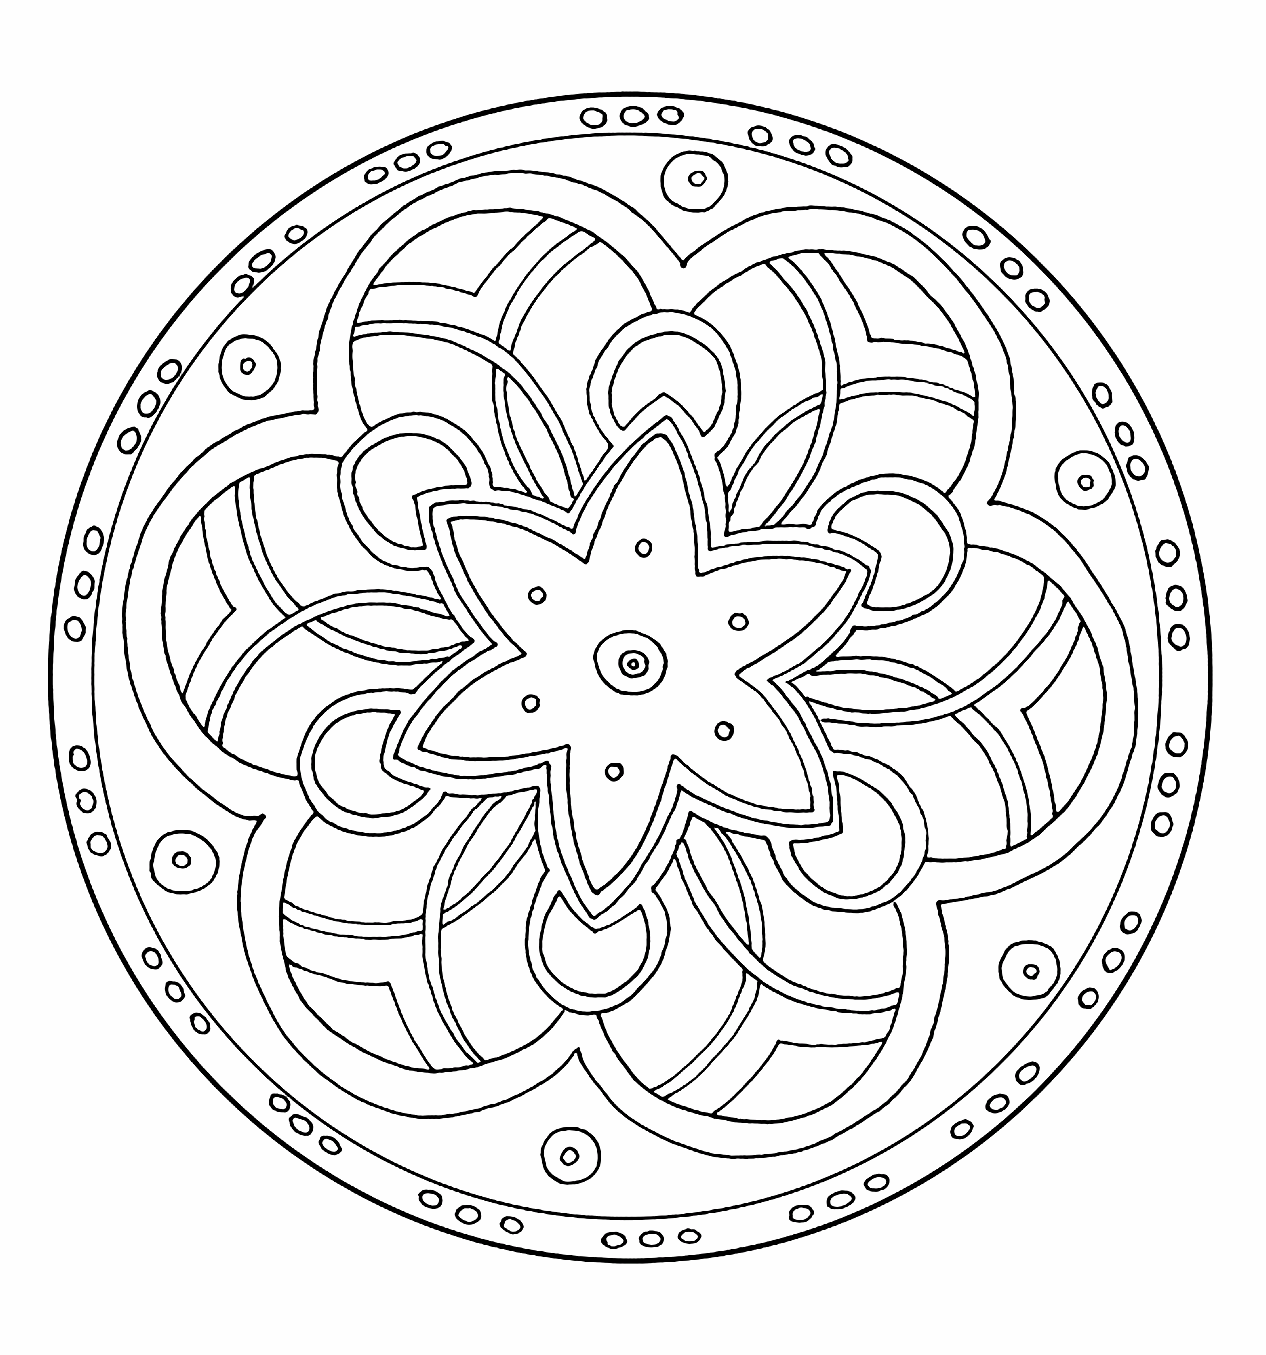 Mandala   colorier avec spirales et une magnifique étoile au milieu